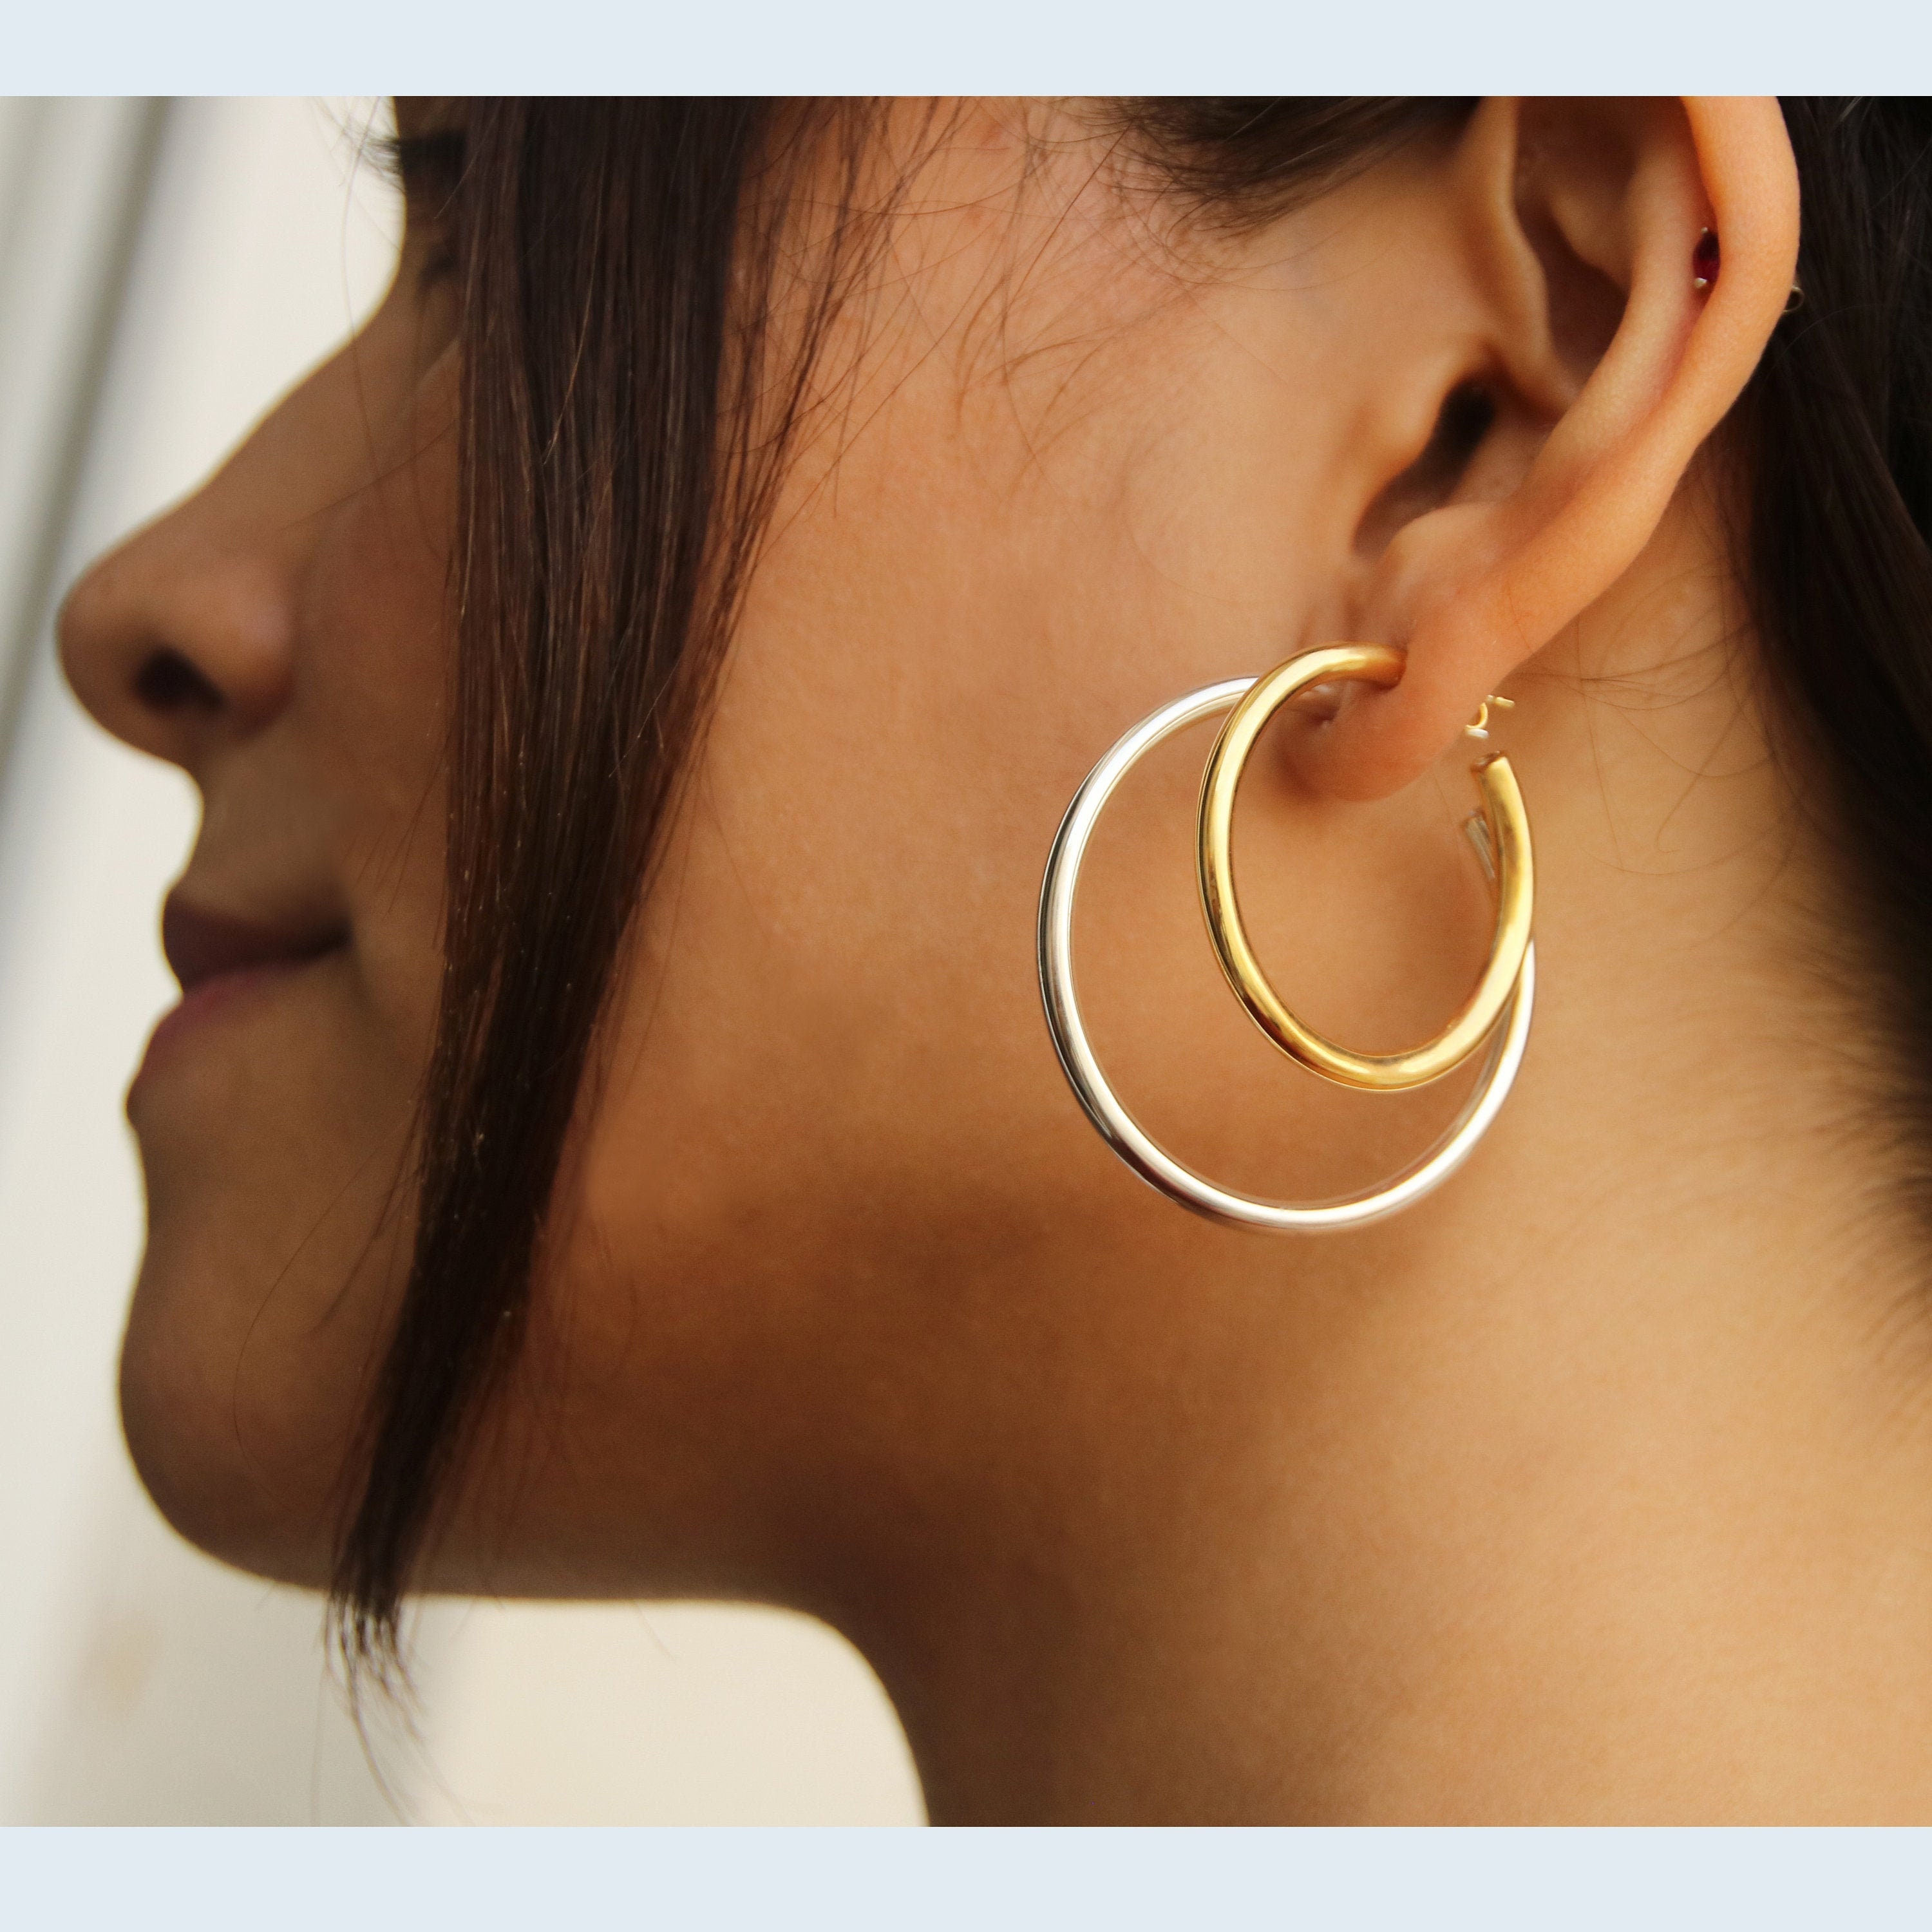 Simple Thin Hoops, Minimalist Jewelry, Minimal Delicate Dainty Hoop Earrings